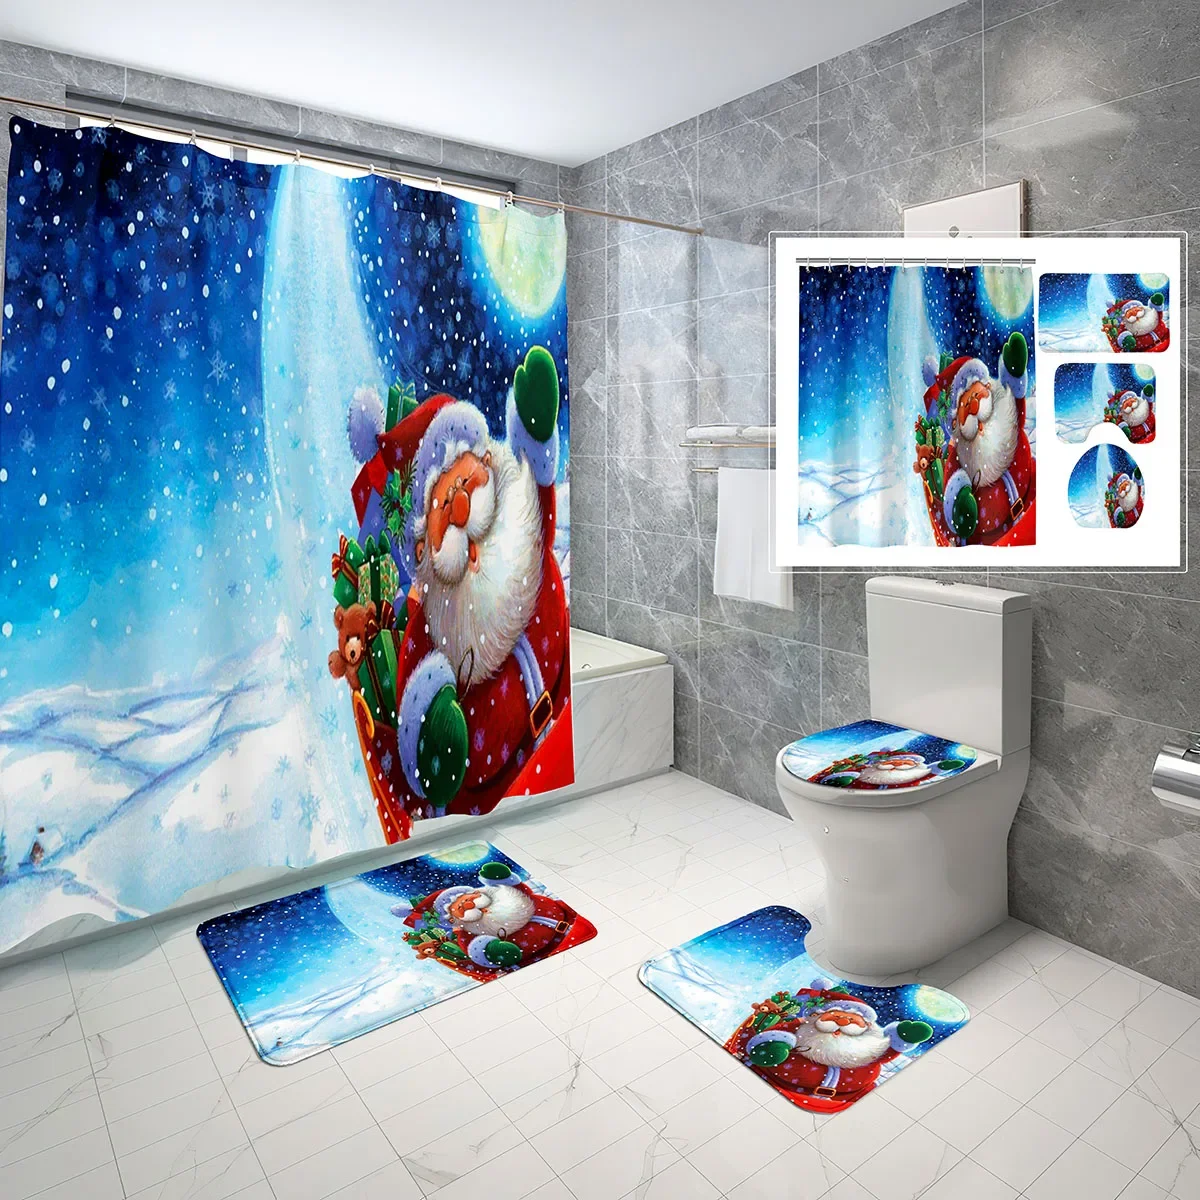 

4 шт. рождественские занавески для душа, Набор рождественских праздничных занавесок для ванной, занавеска для душа, нескользящий коврик для ванной, чехол для туалета